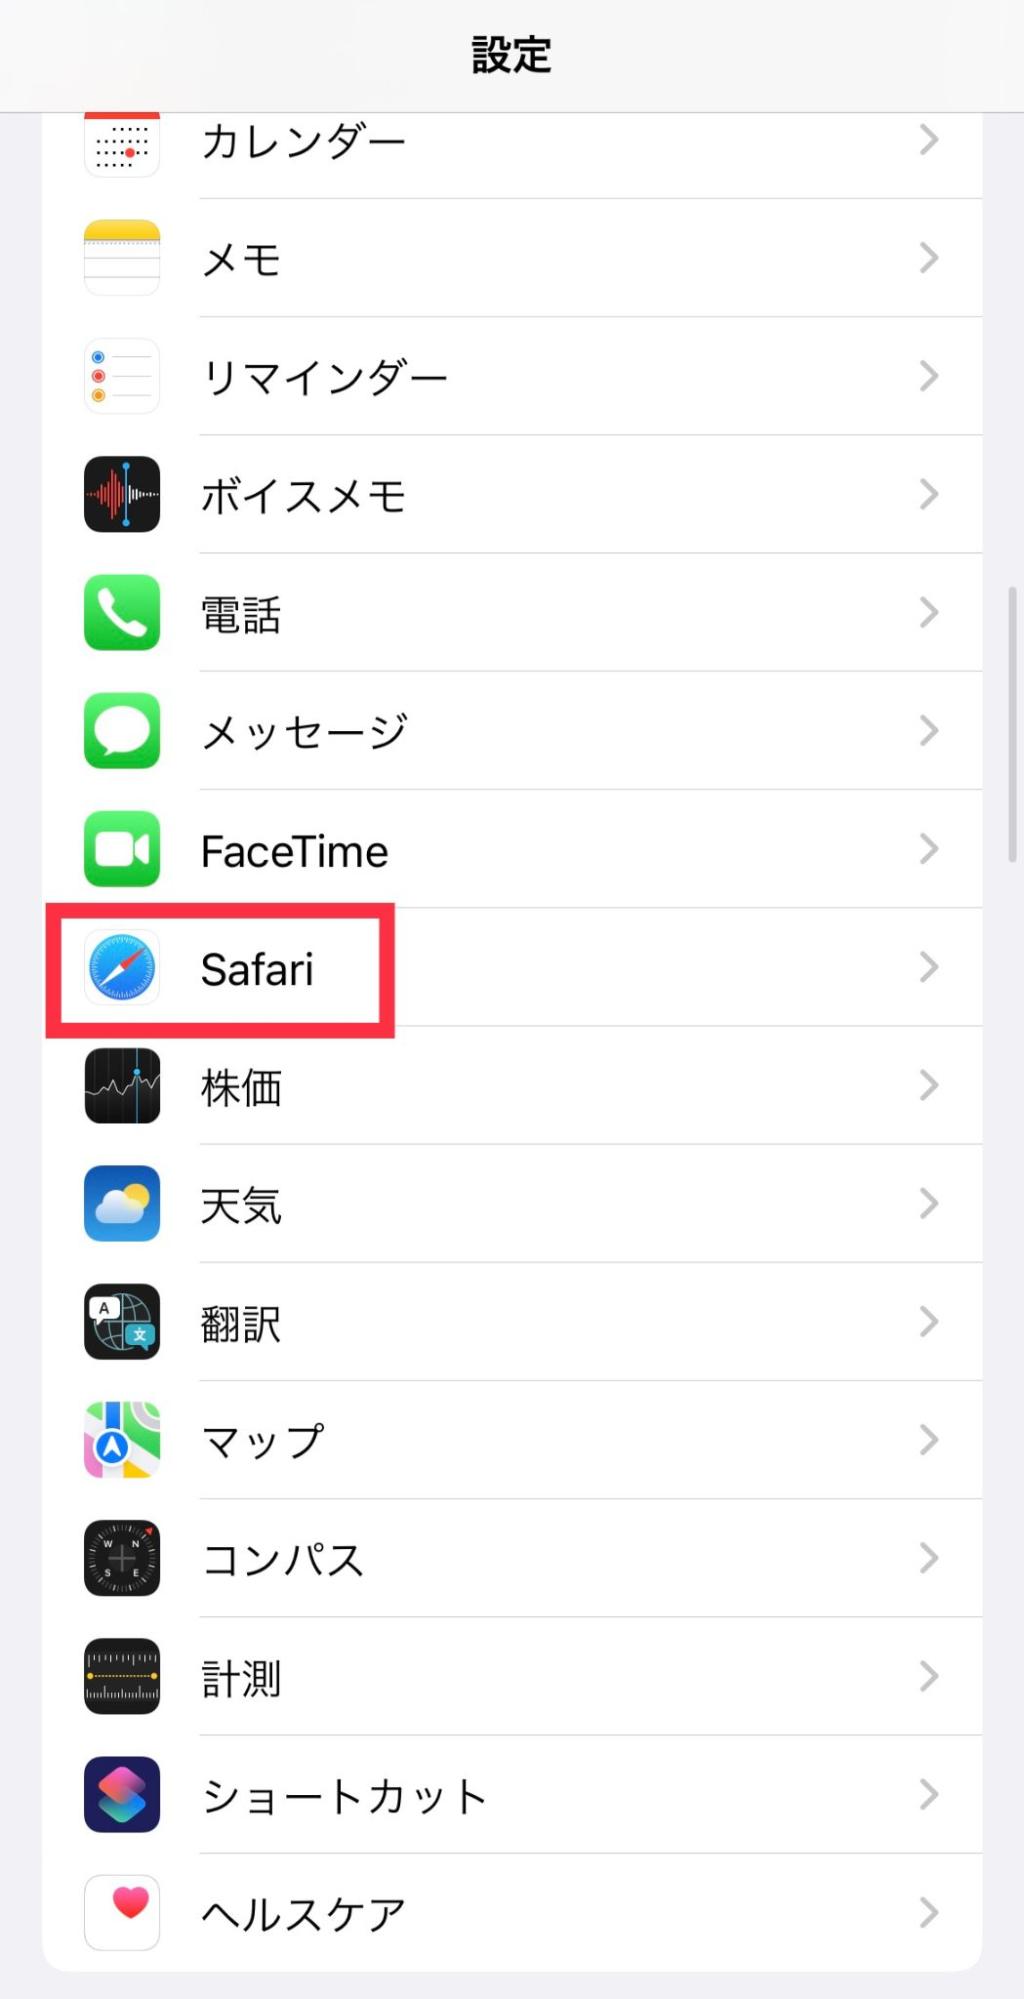 1:iPhoneの「設定」アプリを開き、Safariを選択02